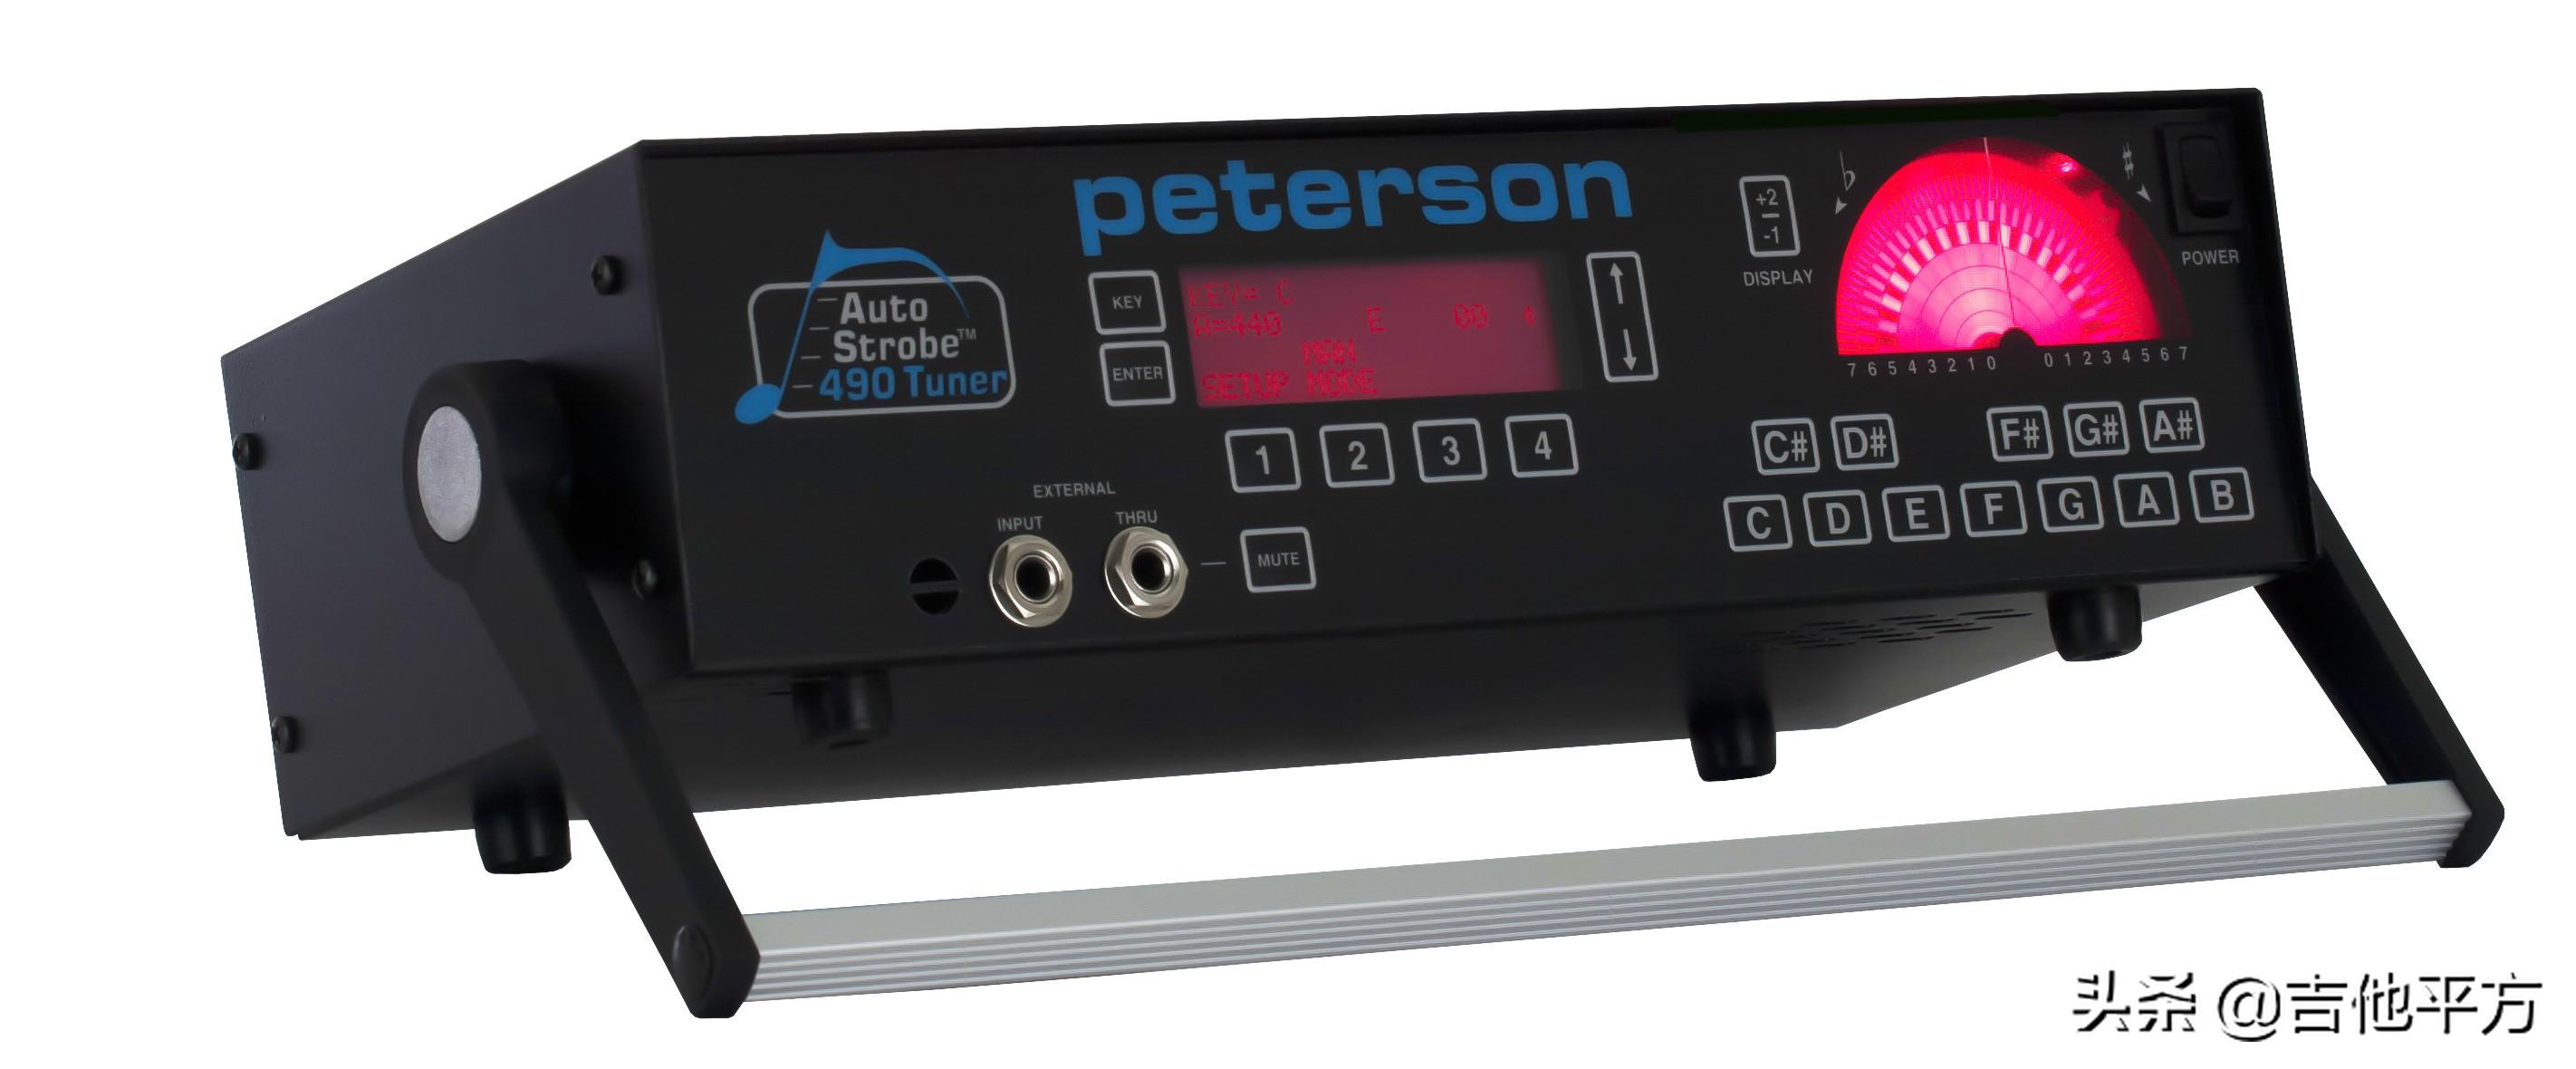 Peterson：调音器市场业界标杆，卓越之选。#Peterson调音器# Peterson AutoStrobe 490是一款真正的频闪式机械调音器，同时能够显示基音和泛音。深受音乐学生、技术人员与专业乐手的认可，成